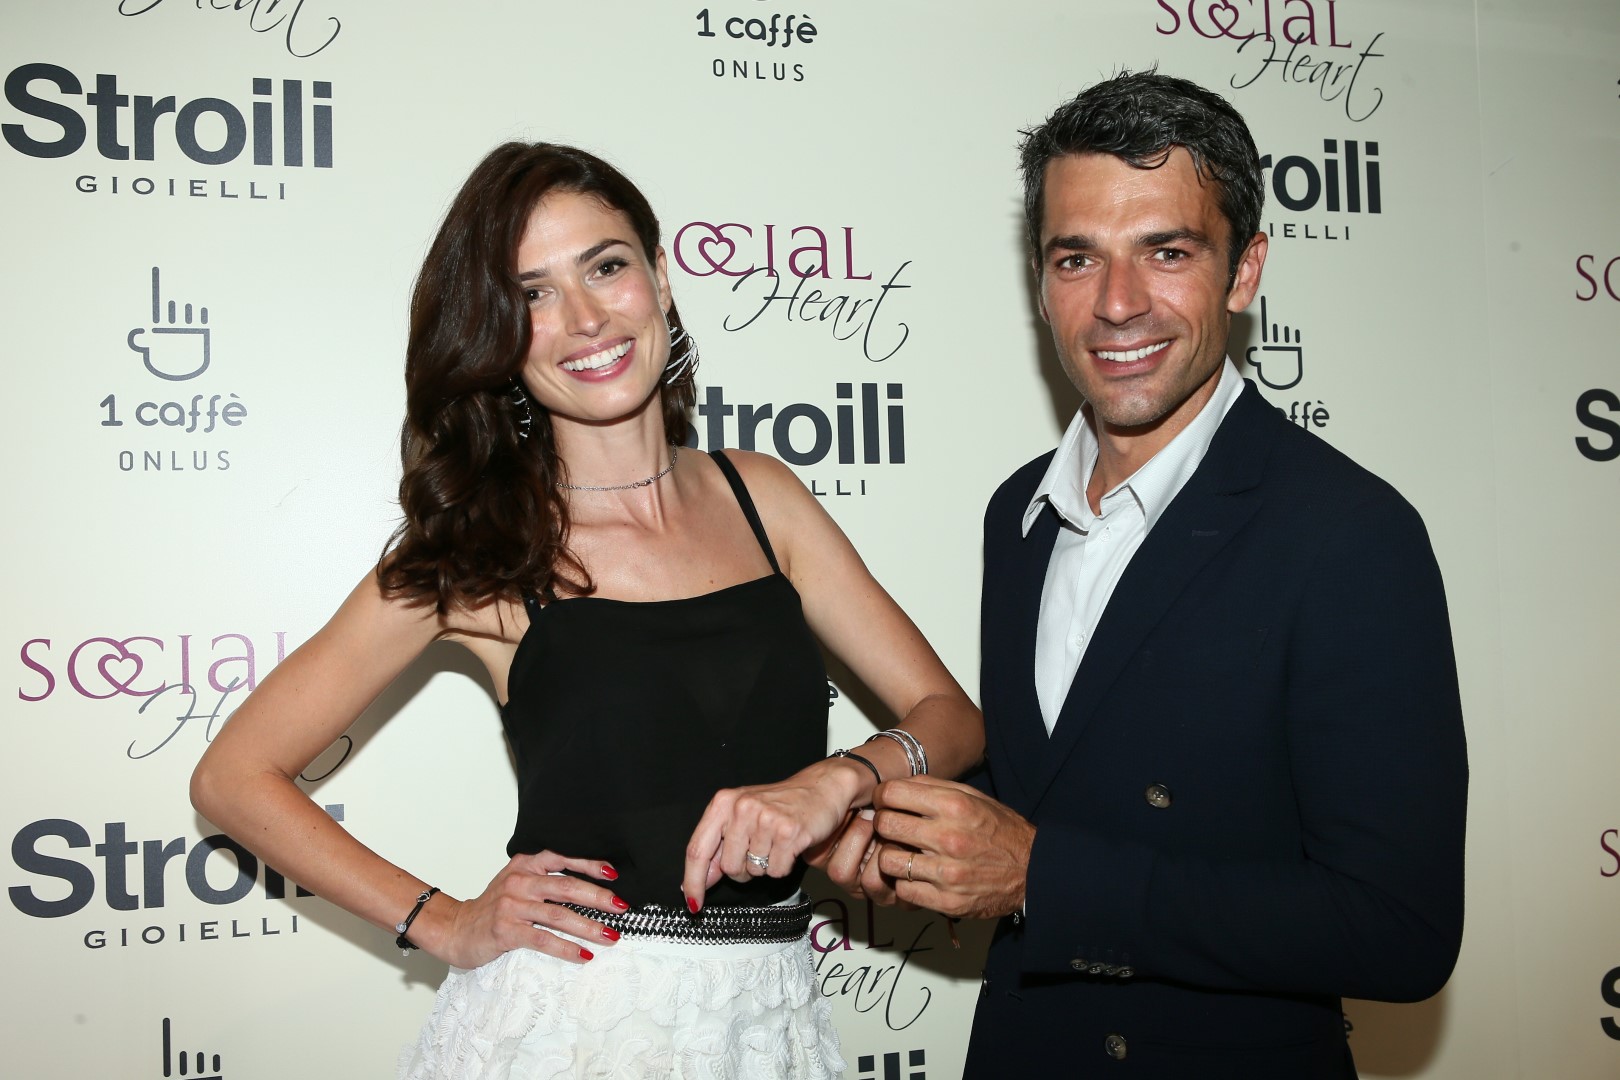 Stroili Luca Argentero: l&#8217;attore presenta il nuovo bracciale dall’animo benefico Social Heart, il party